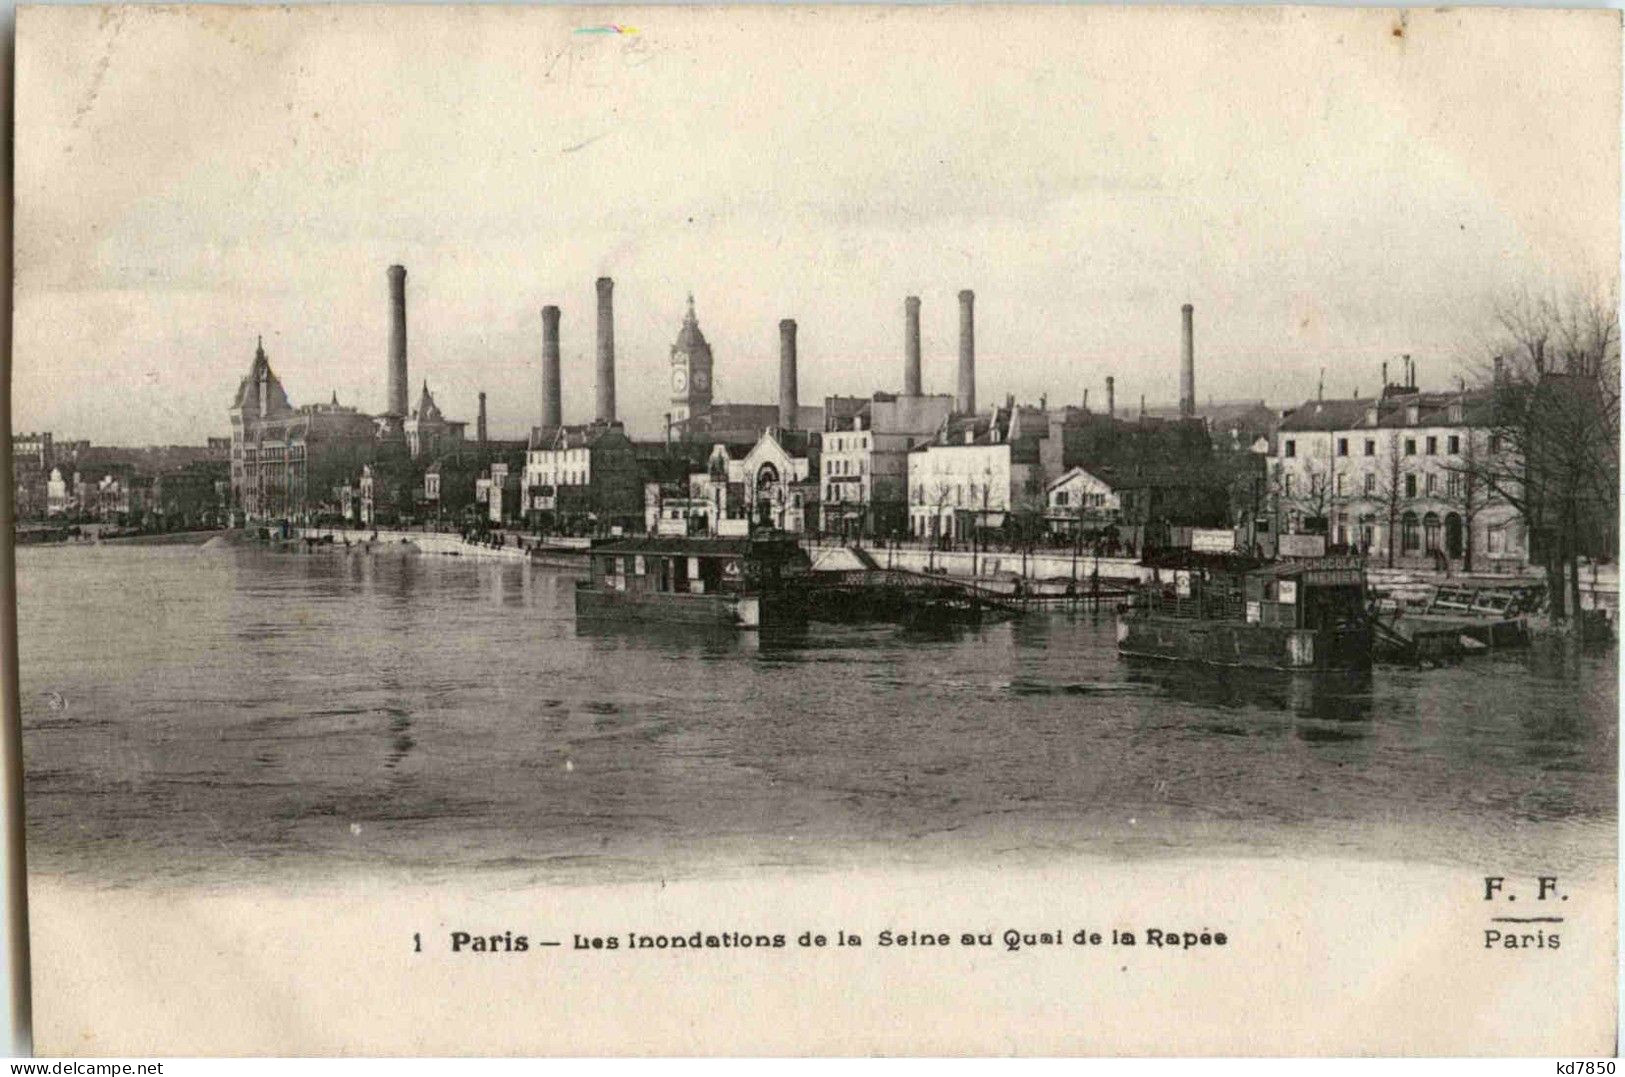 Paris - Les Inondations - Paris Flood, 1910